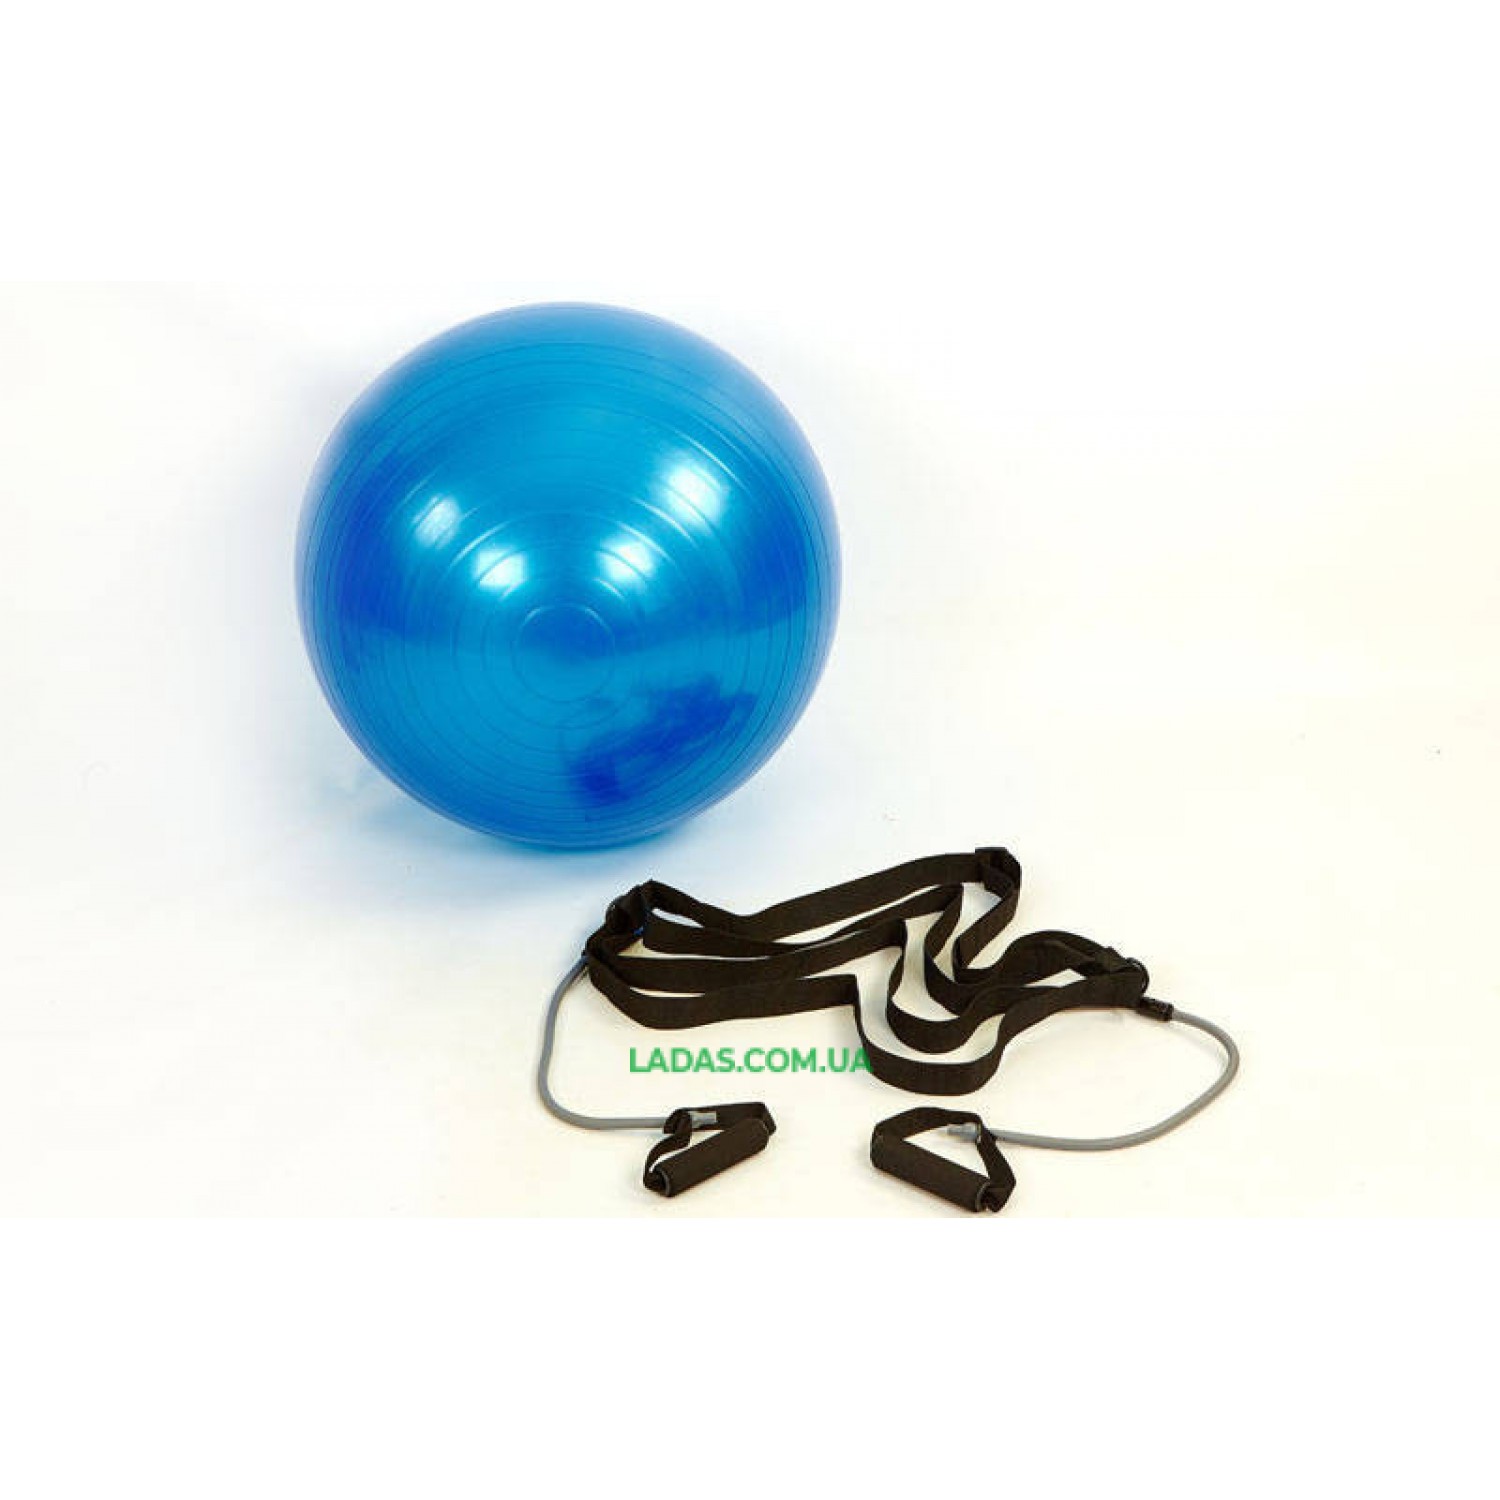 Мяч для фитнеса (фитбол) глянцевый с эспандерами и ремнем (65см, 1100г, ABS)